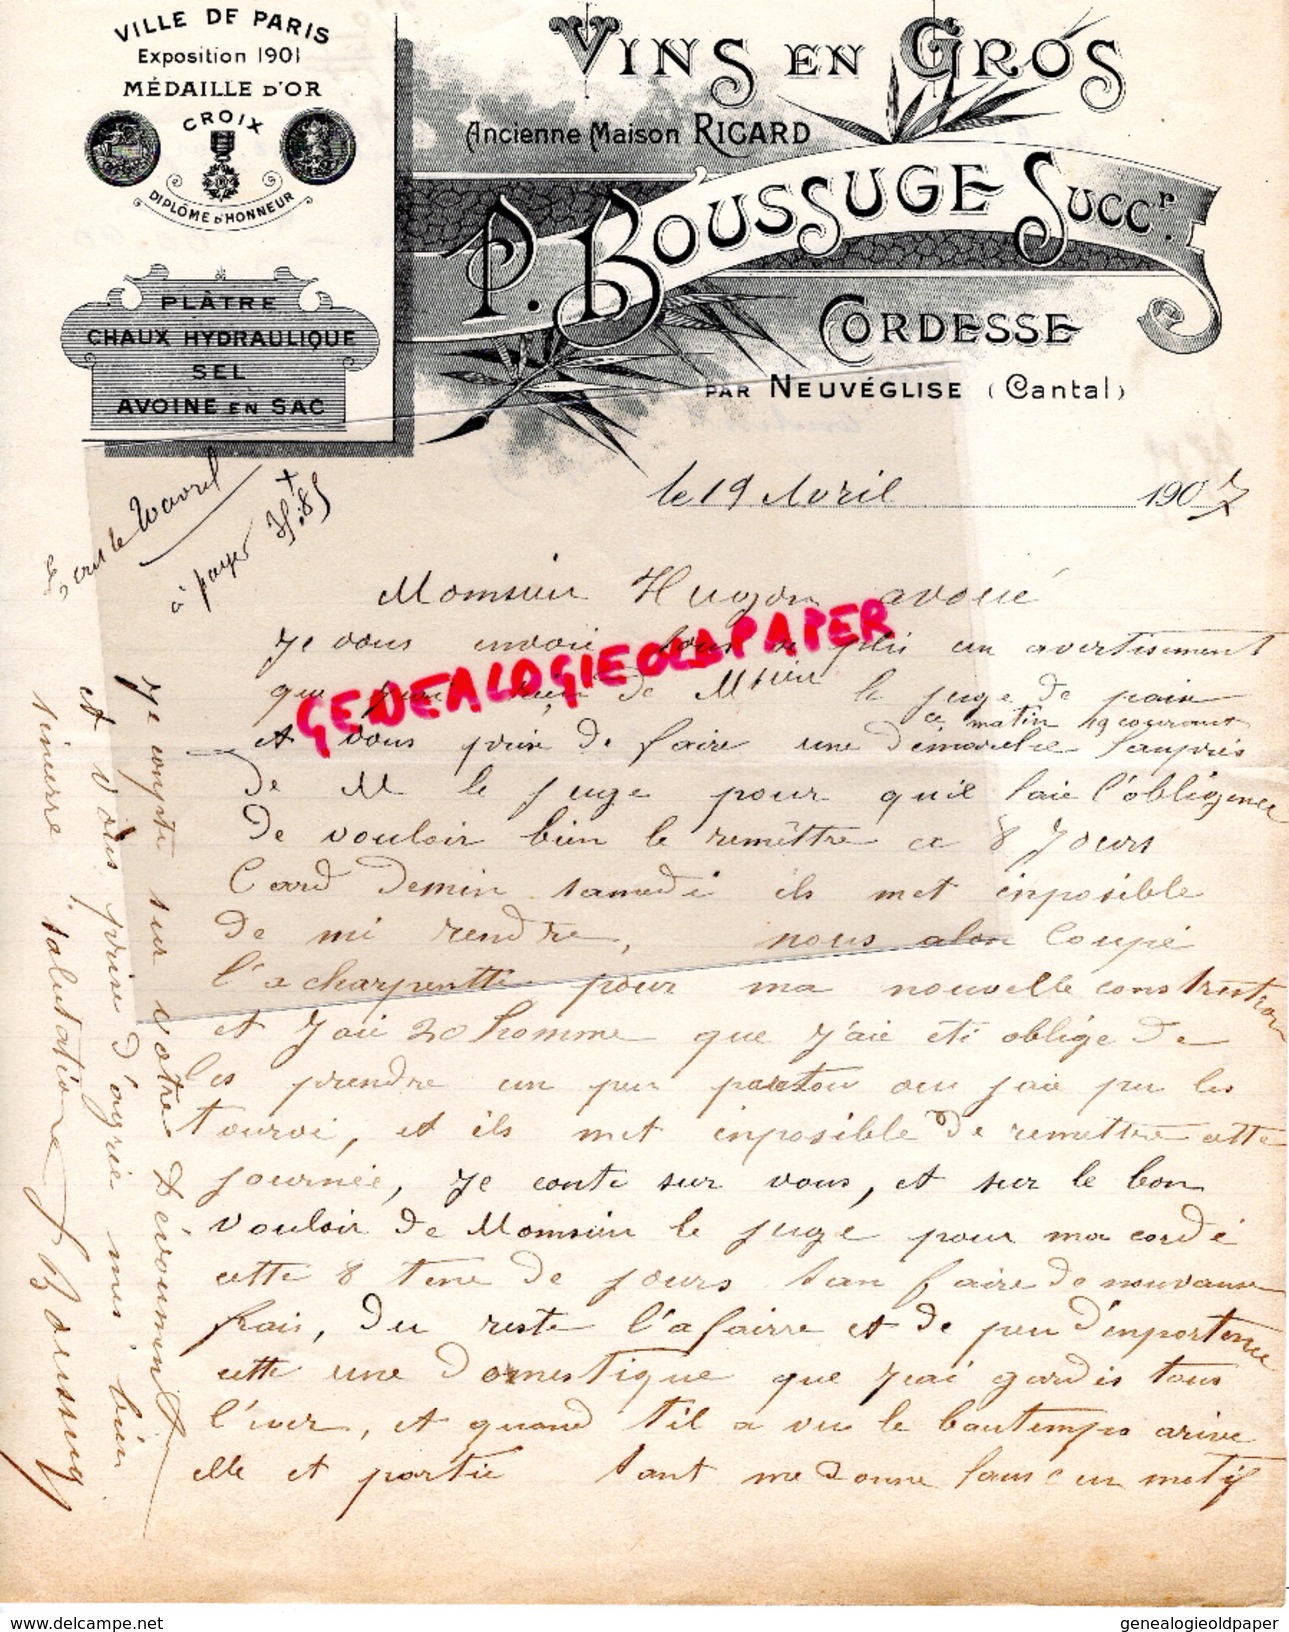 15 - AURILLAC- BELLE LETTRE MANUSCRITE  P. BOUSSUGE -RICARD- CORDESSE PAR NEUVEGLISE- VINS -1907- EXPOSITION PARIS 1901 - Alimentare